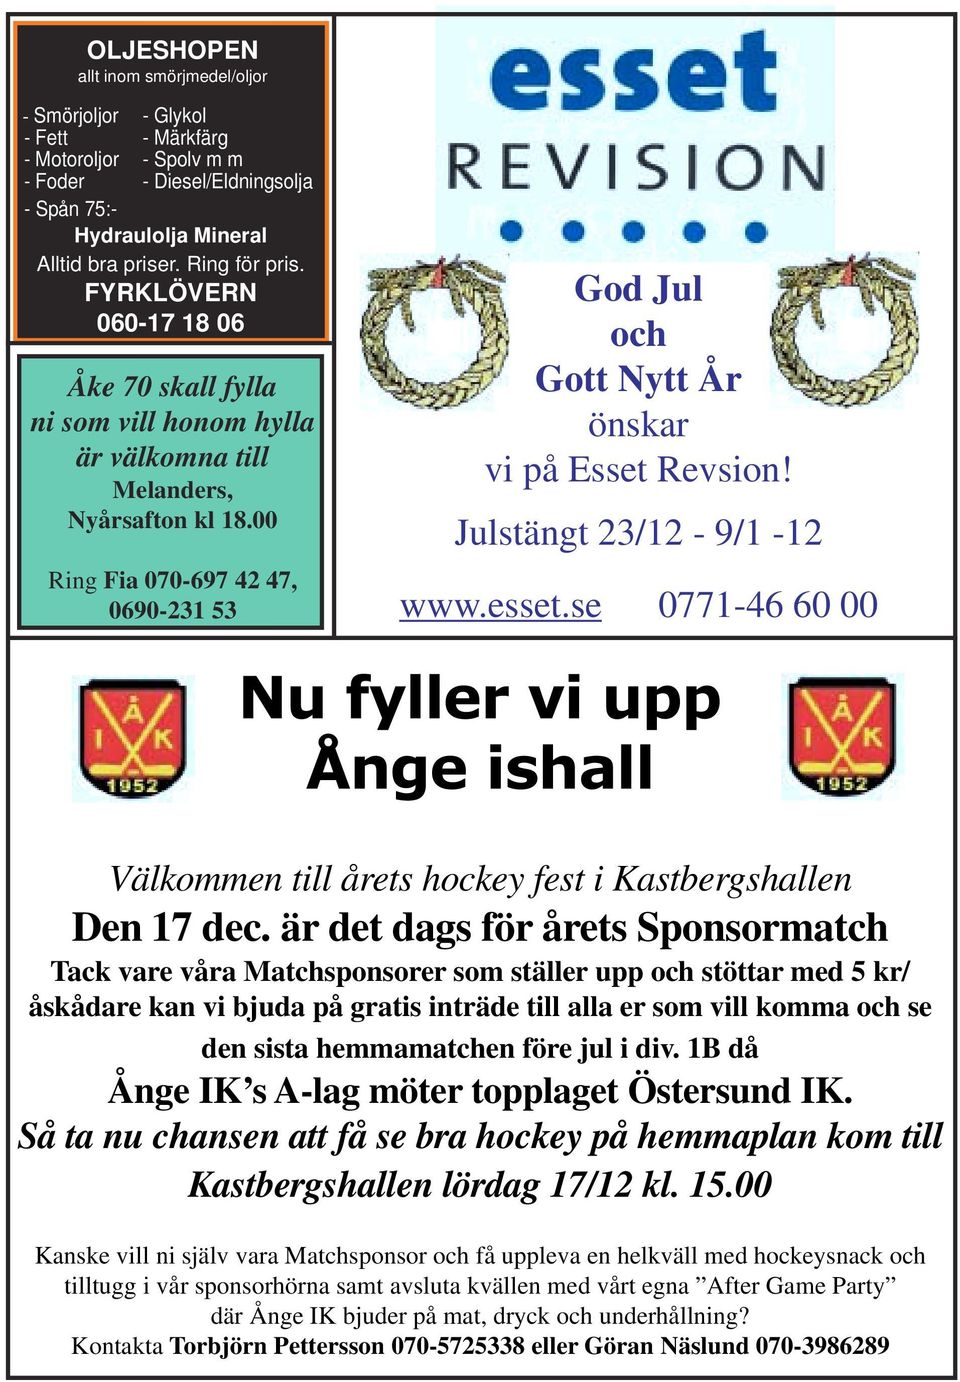 00 Ring Fia 070-697 42 47, 0690-231 53 God Jul och Gott Nytt År önskar vi på Esset Revsion! Julstängt 23/12-9/1-12 www.esset.